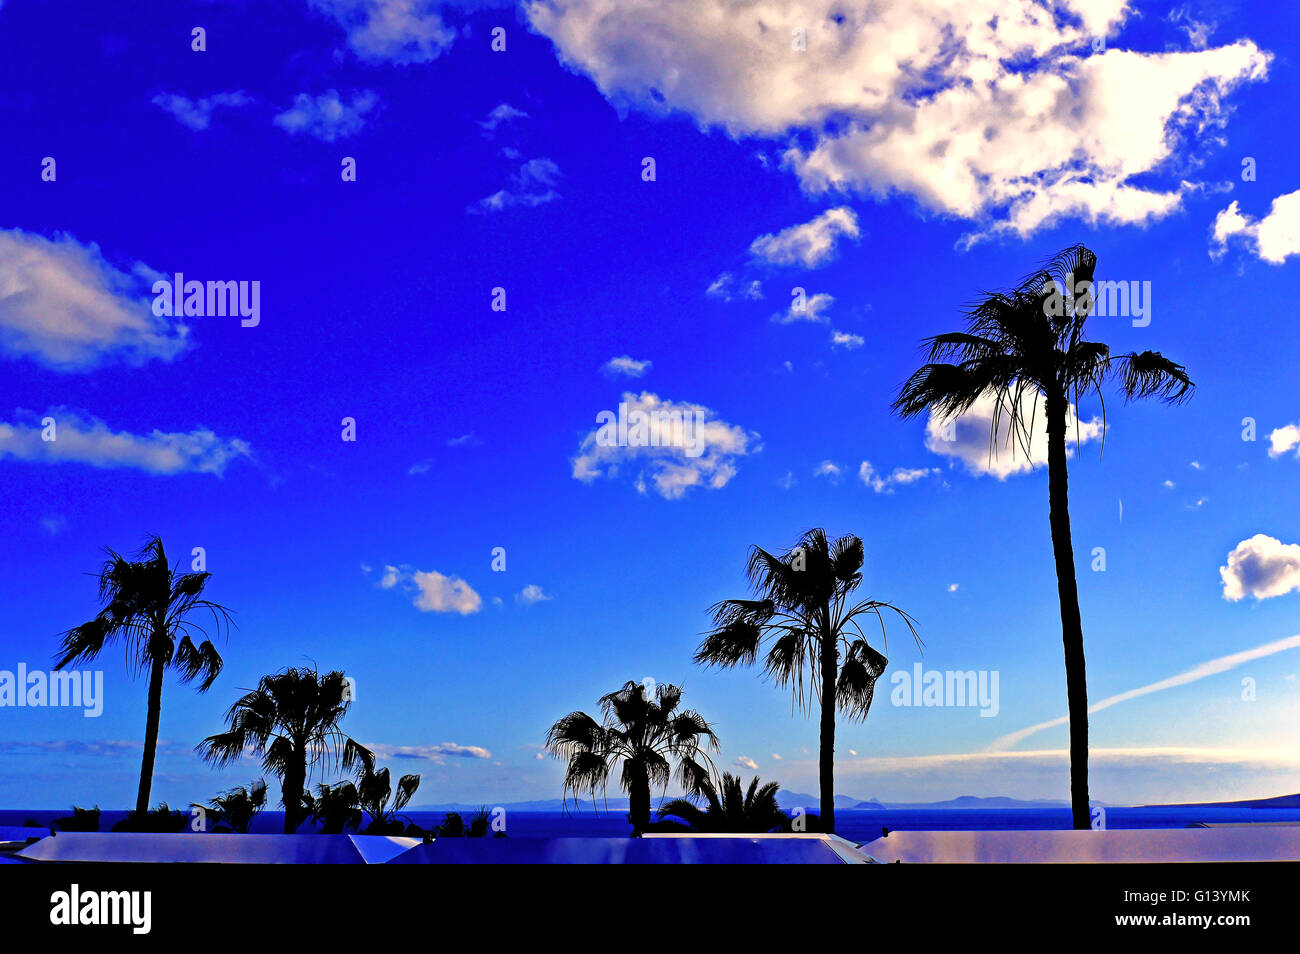 Lanzarote Arrecife Puerto del Carmen sea view palm trees blue sky Stock Photo